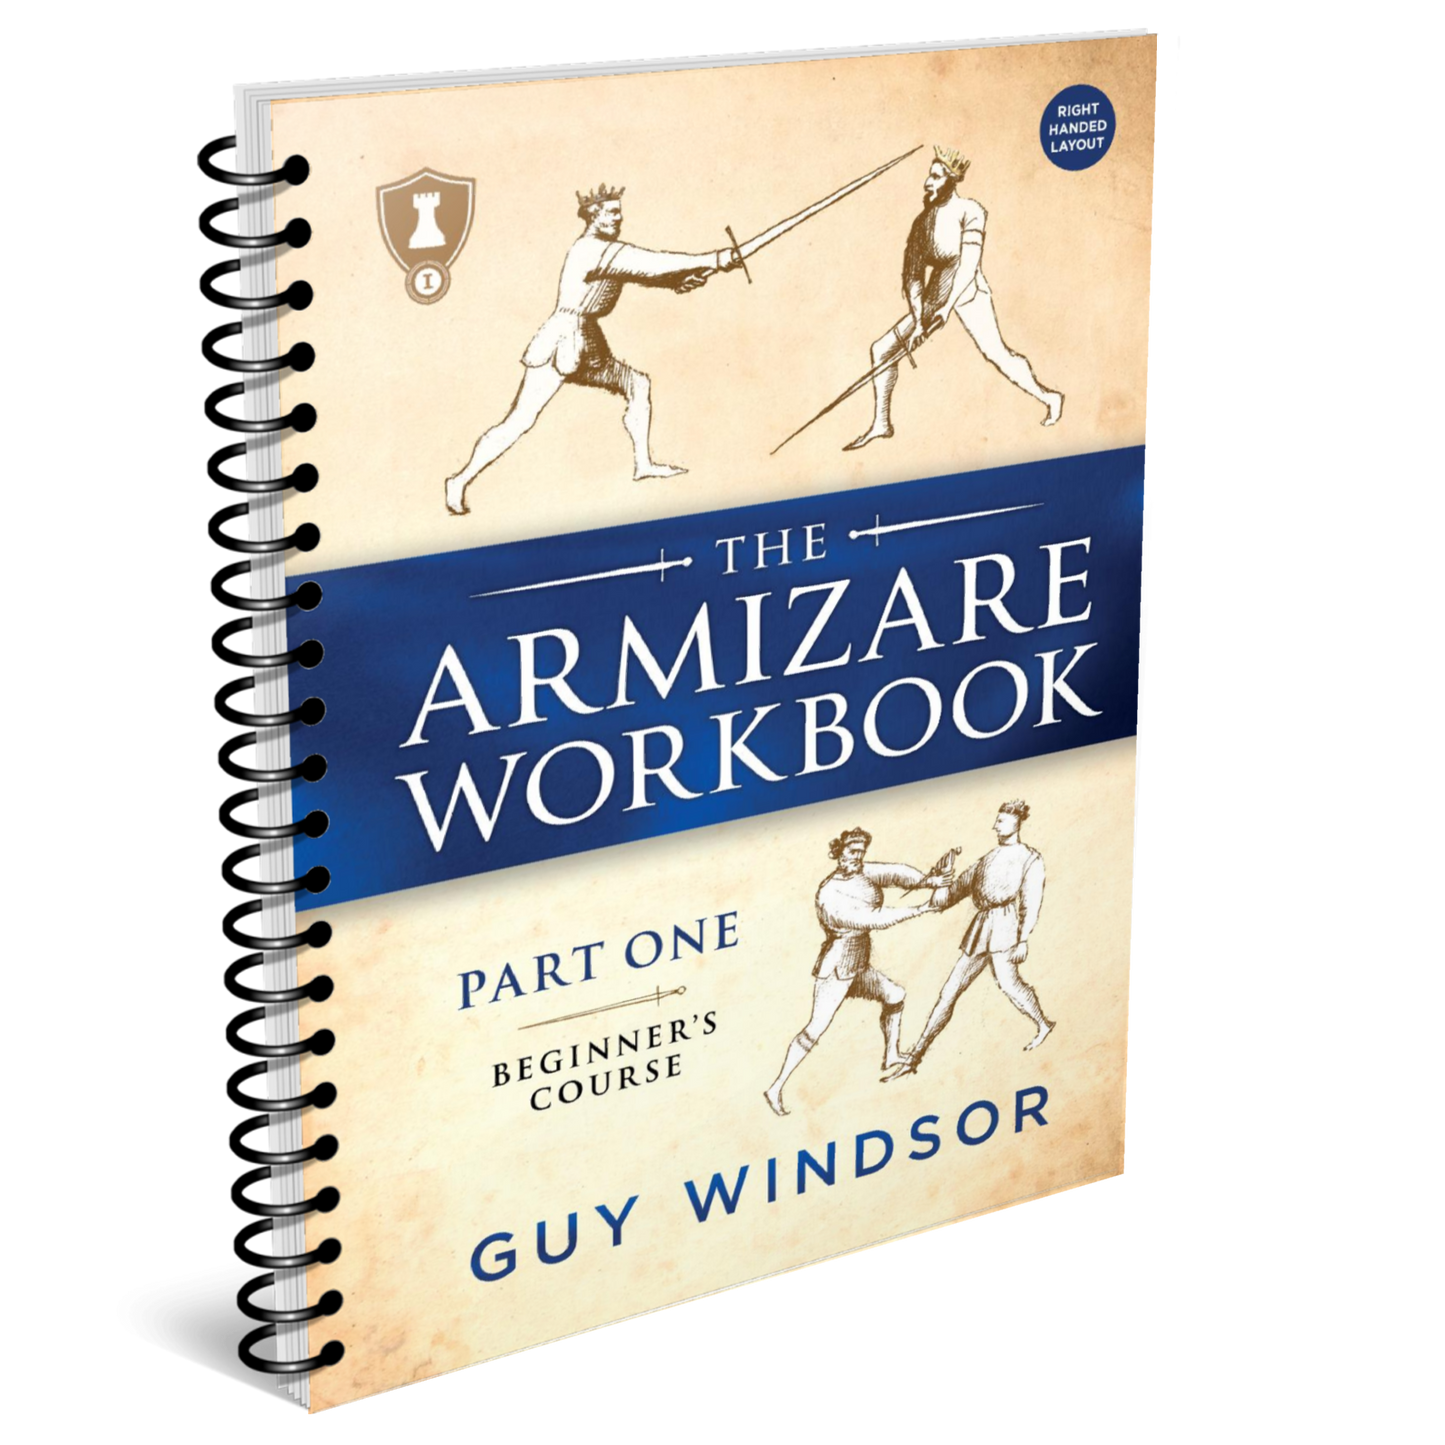 The Armizare Workbook: Part One: The Beginner's Course, Right-Handed Version (spiral bound workbook)